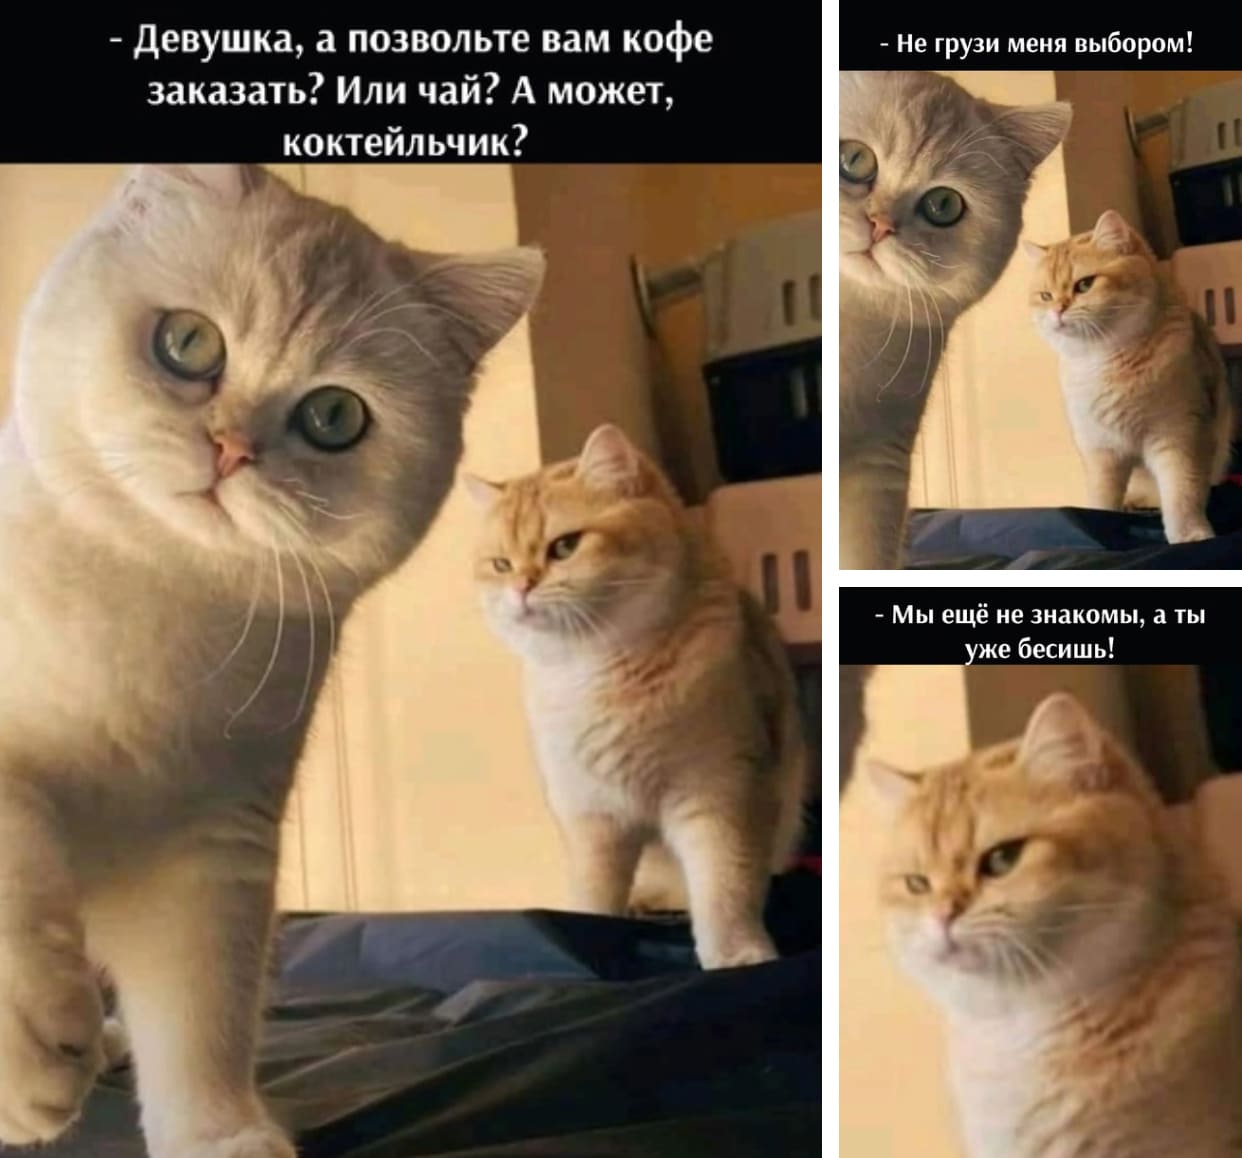 Мемы про котов Мы еще не знакмы, а ты уже б**** фото